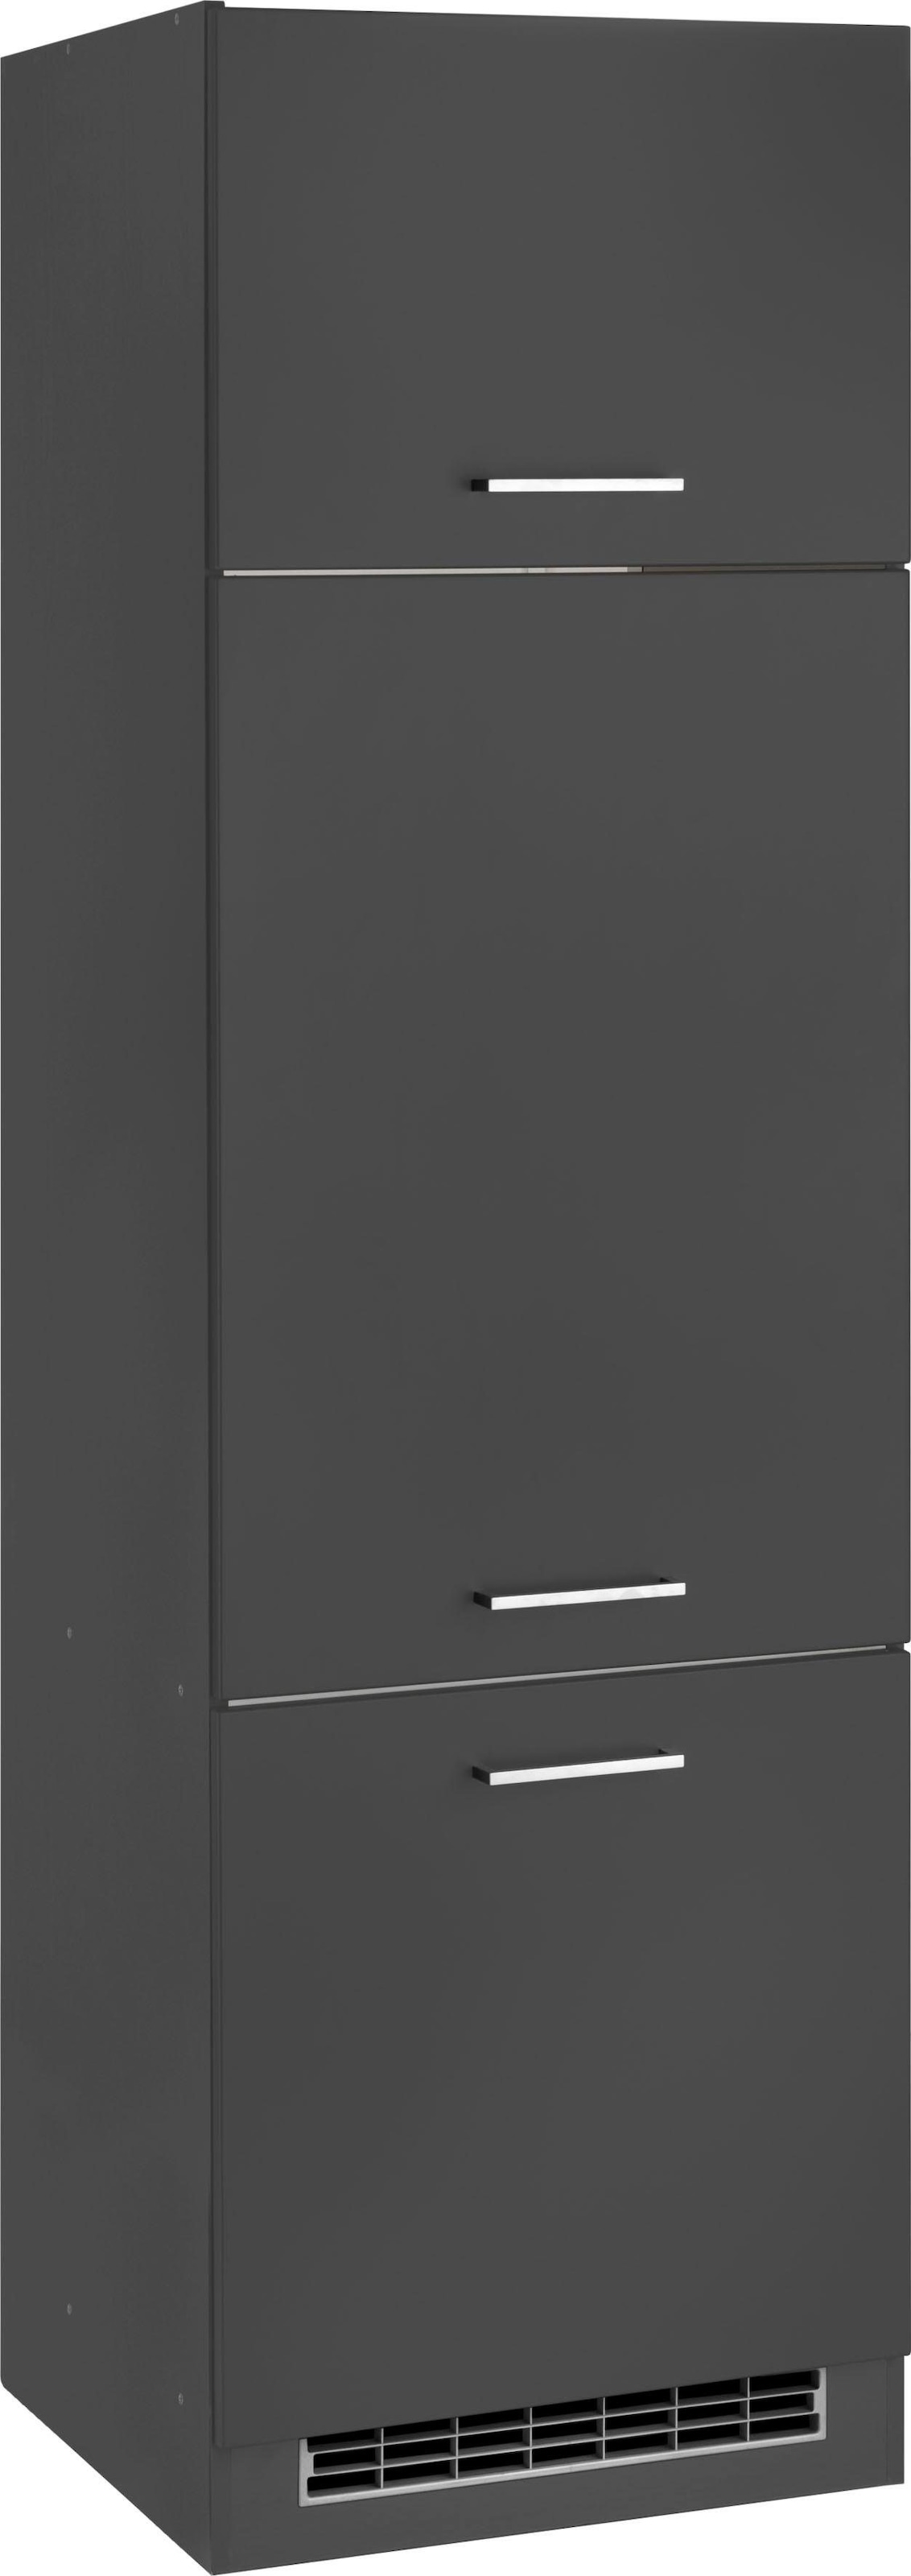 HELD MÖBEL Kühlumbauschrank »Kehl«, Einbaukühlschrank, kaufen auf Rechnung für 88cm Nischenhöhe